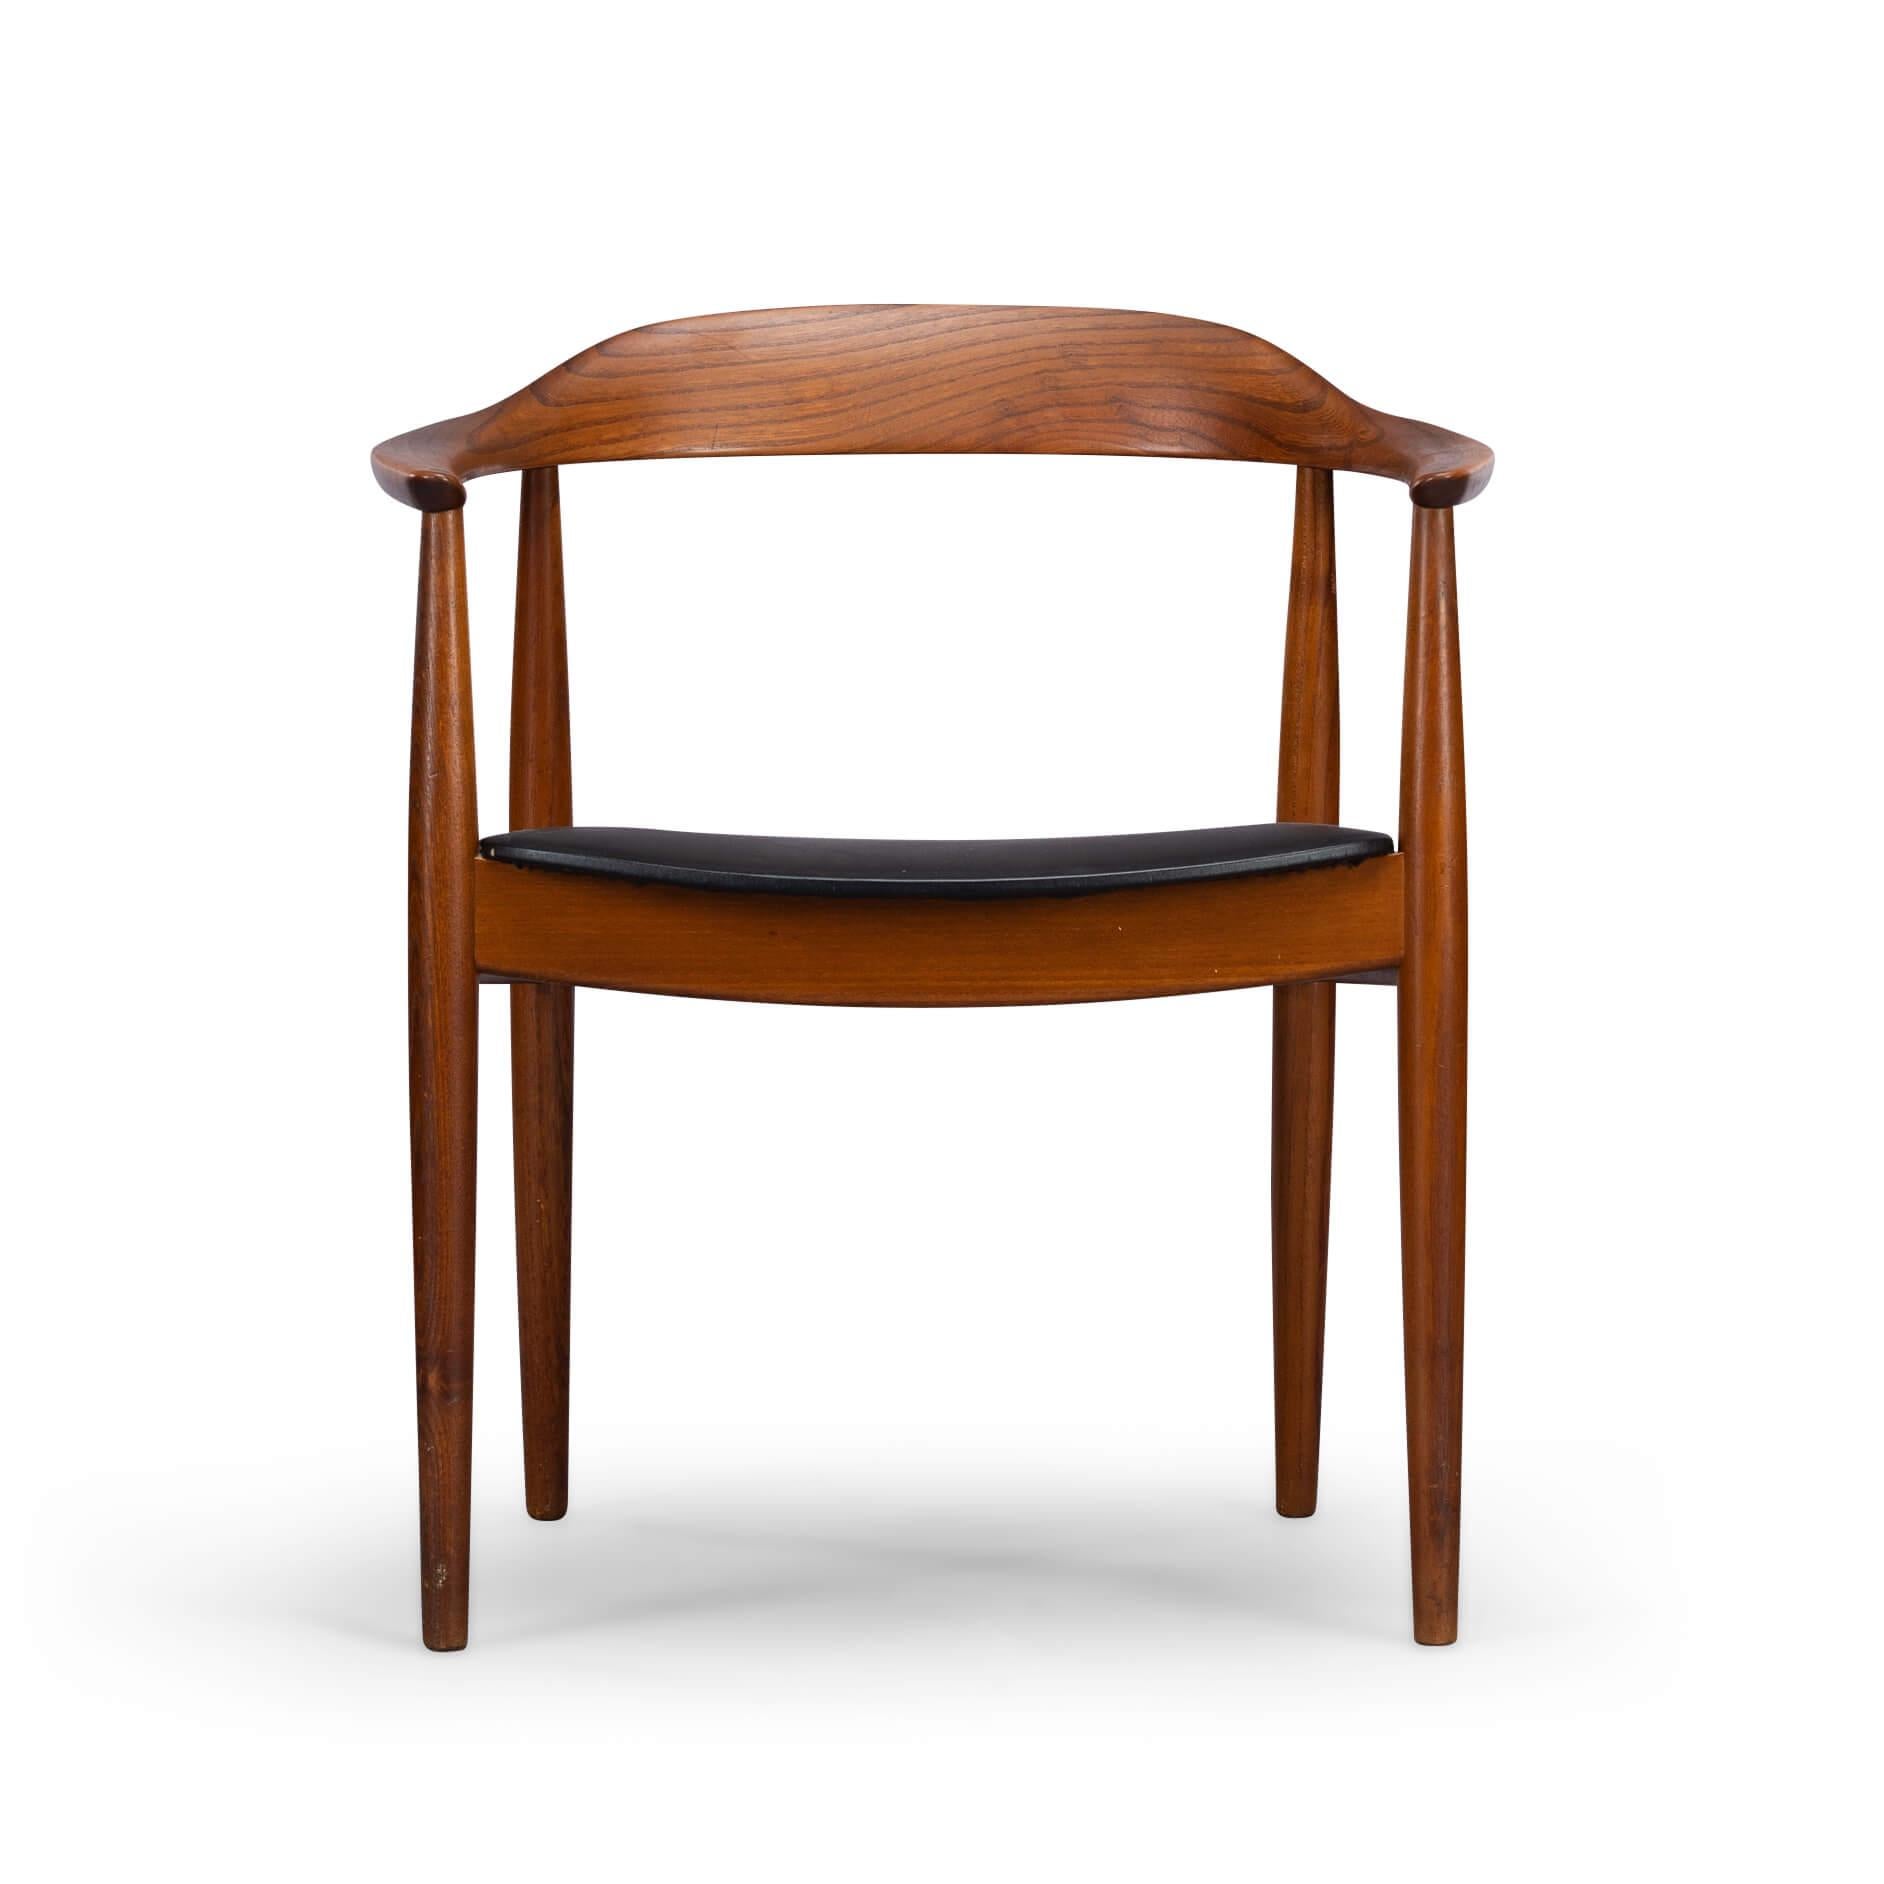 Repéré en un clin d'œil, c'est un Eilersen ! Le design est souvent attribué à Illum Wikkelsø, mais c'est Arne Wahl Iversen qui a conçu cette chaise de bureau. Quoi qu'il en soit, elle est immédiatement reconnaissable comme une Niels Eilersen. Le